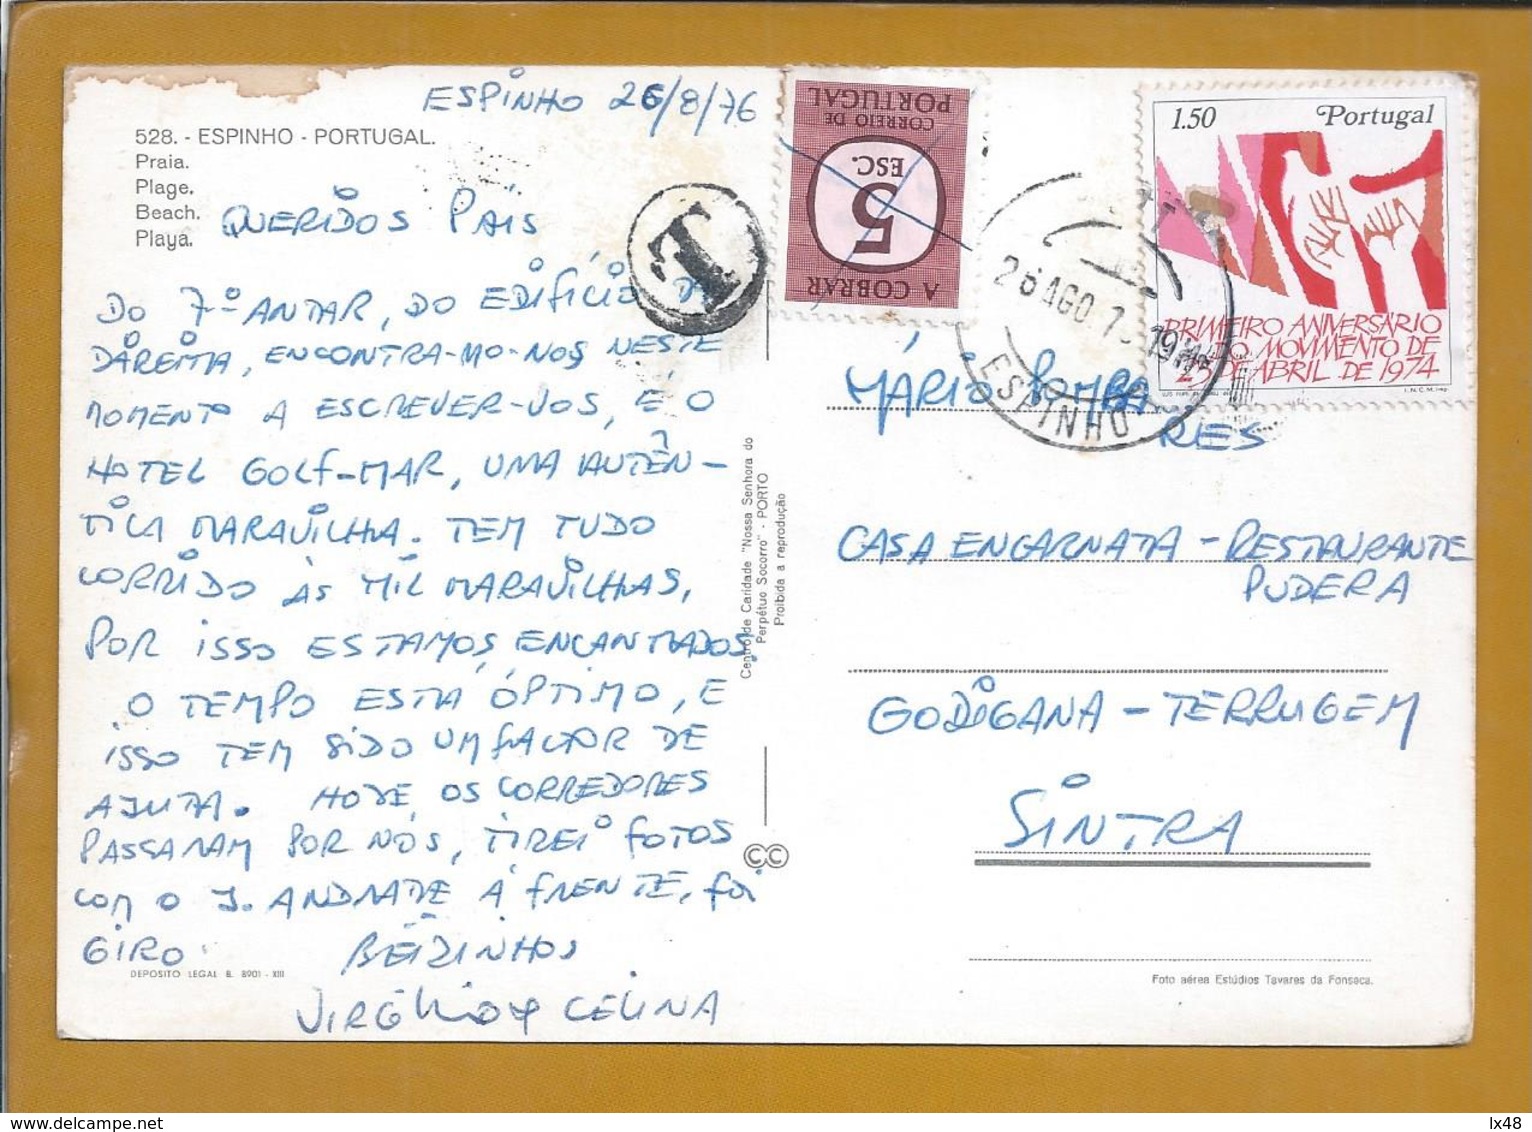 Postcard Fined Circled 1975, Espinho. Stamp Revolution April 25th. Postal Porteado E Expedido De Espinho / Terrugem - Lettres & Documents